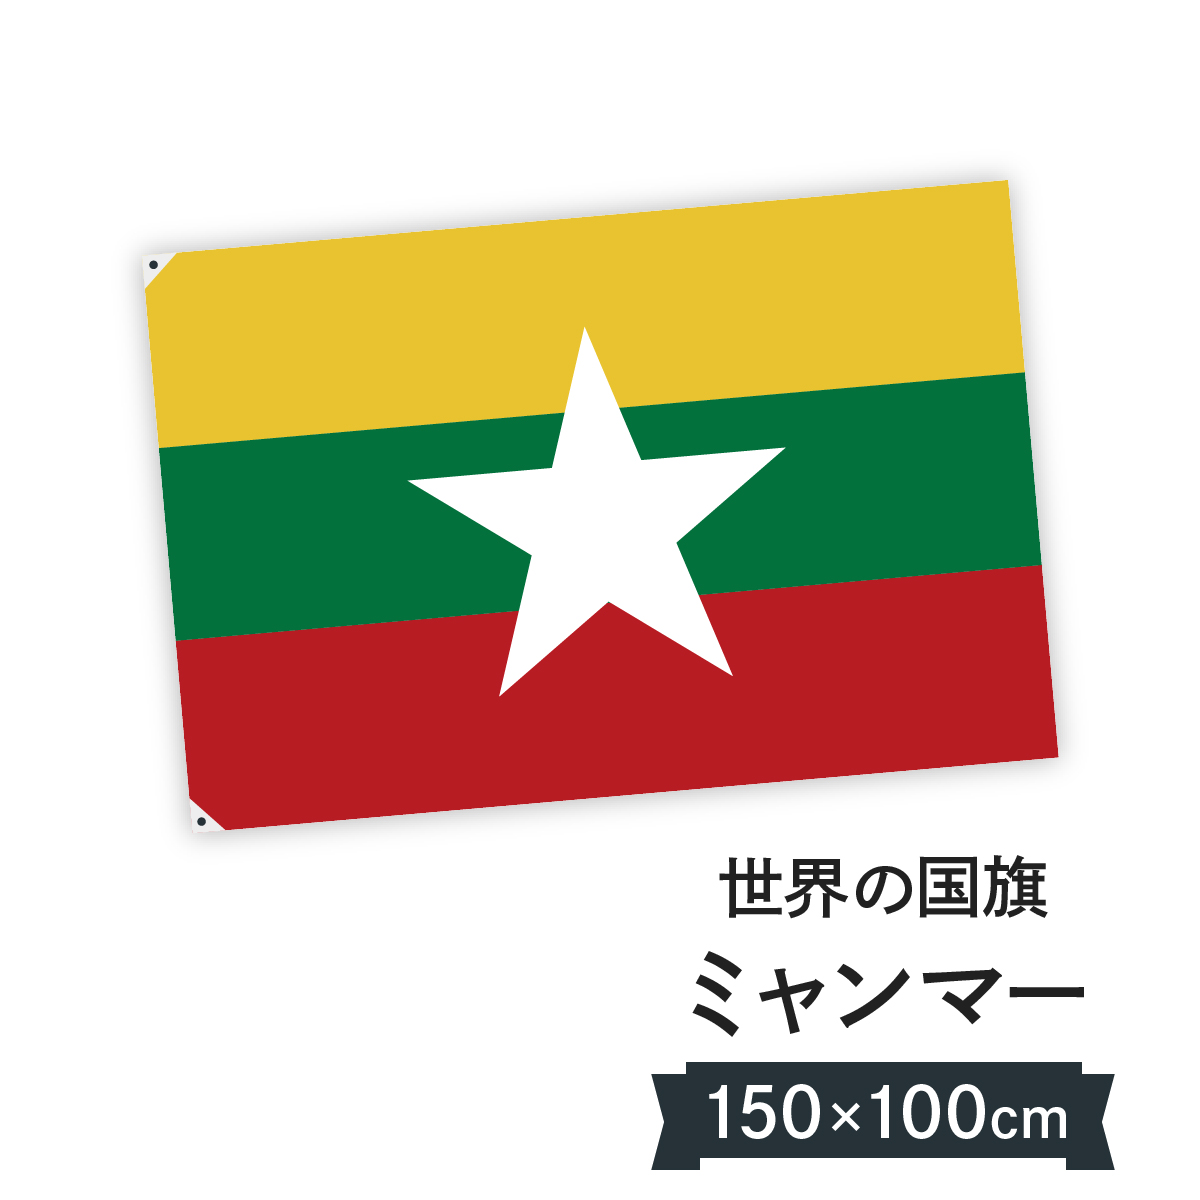 お店に飾ればお手軽異国風演出 国旗 W150cm H100cmホビー ミャンマー W150cm H100cm グッズプロ 国旗